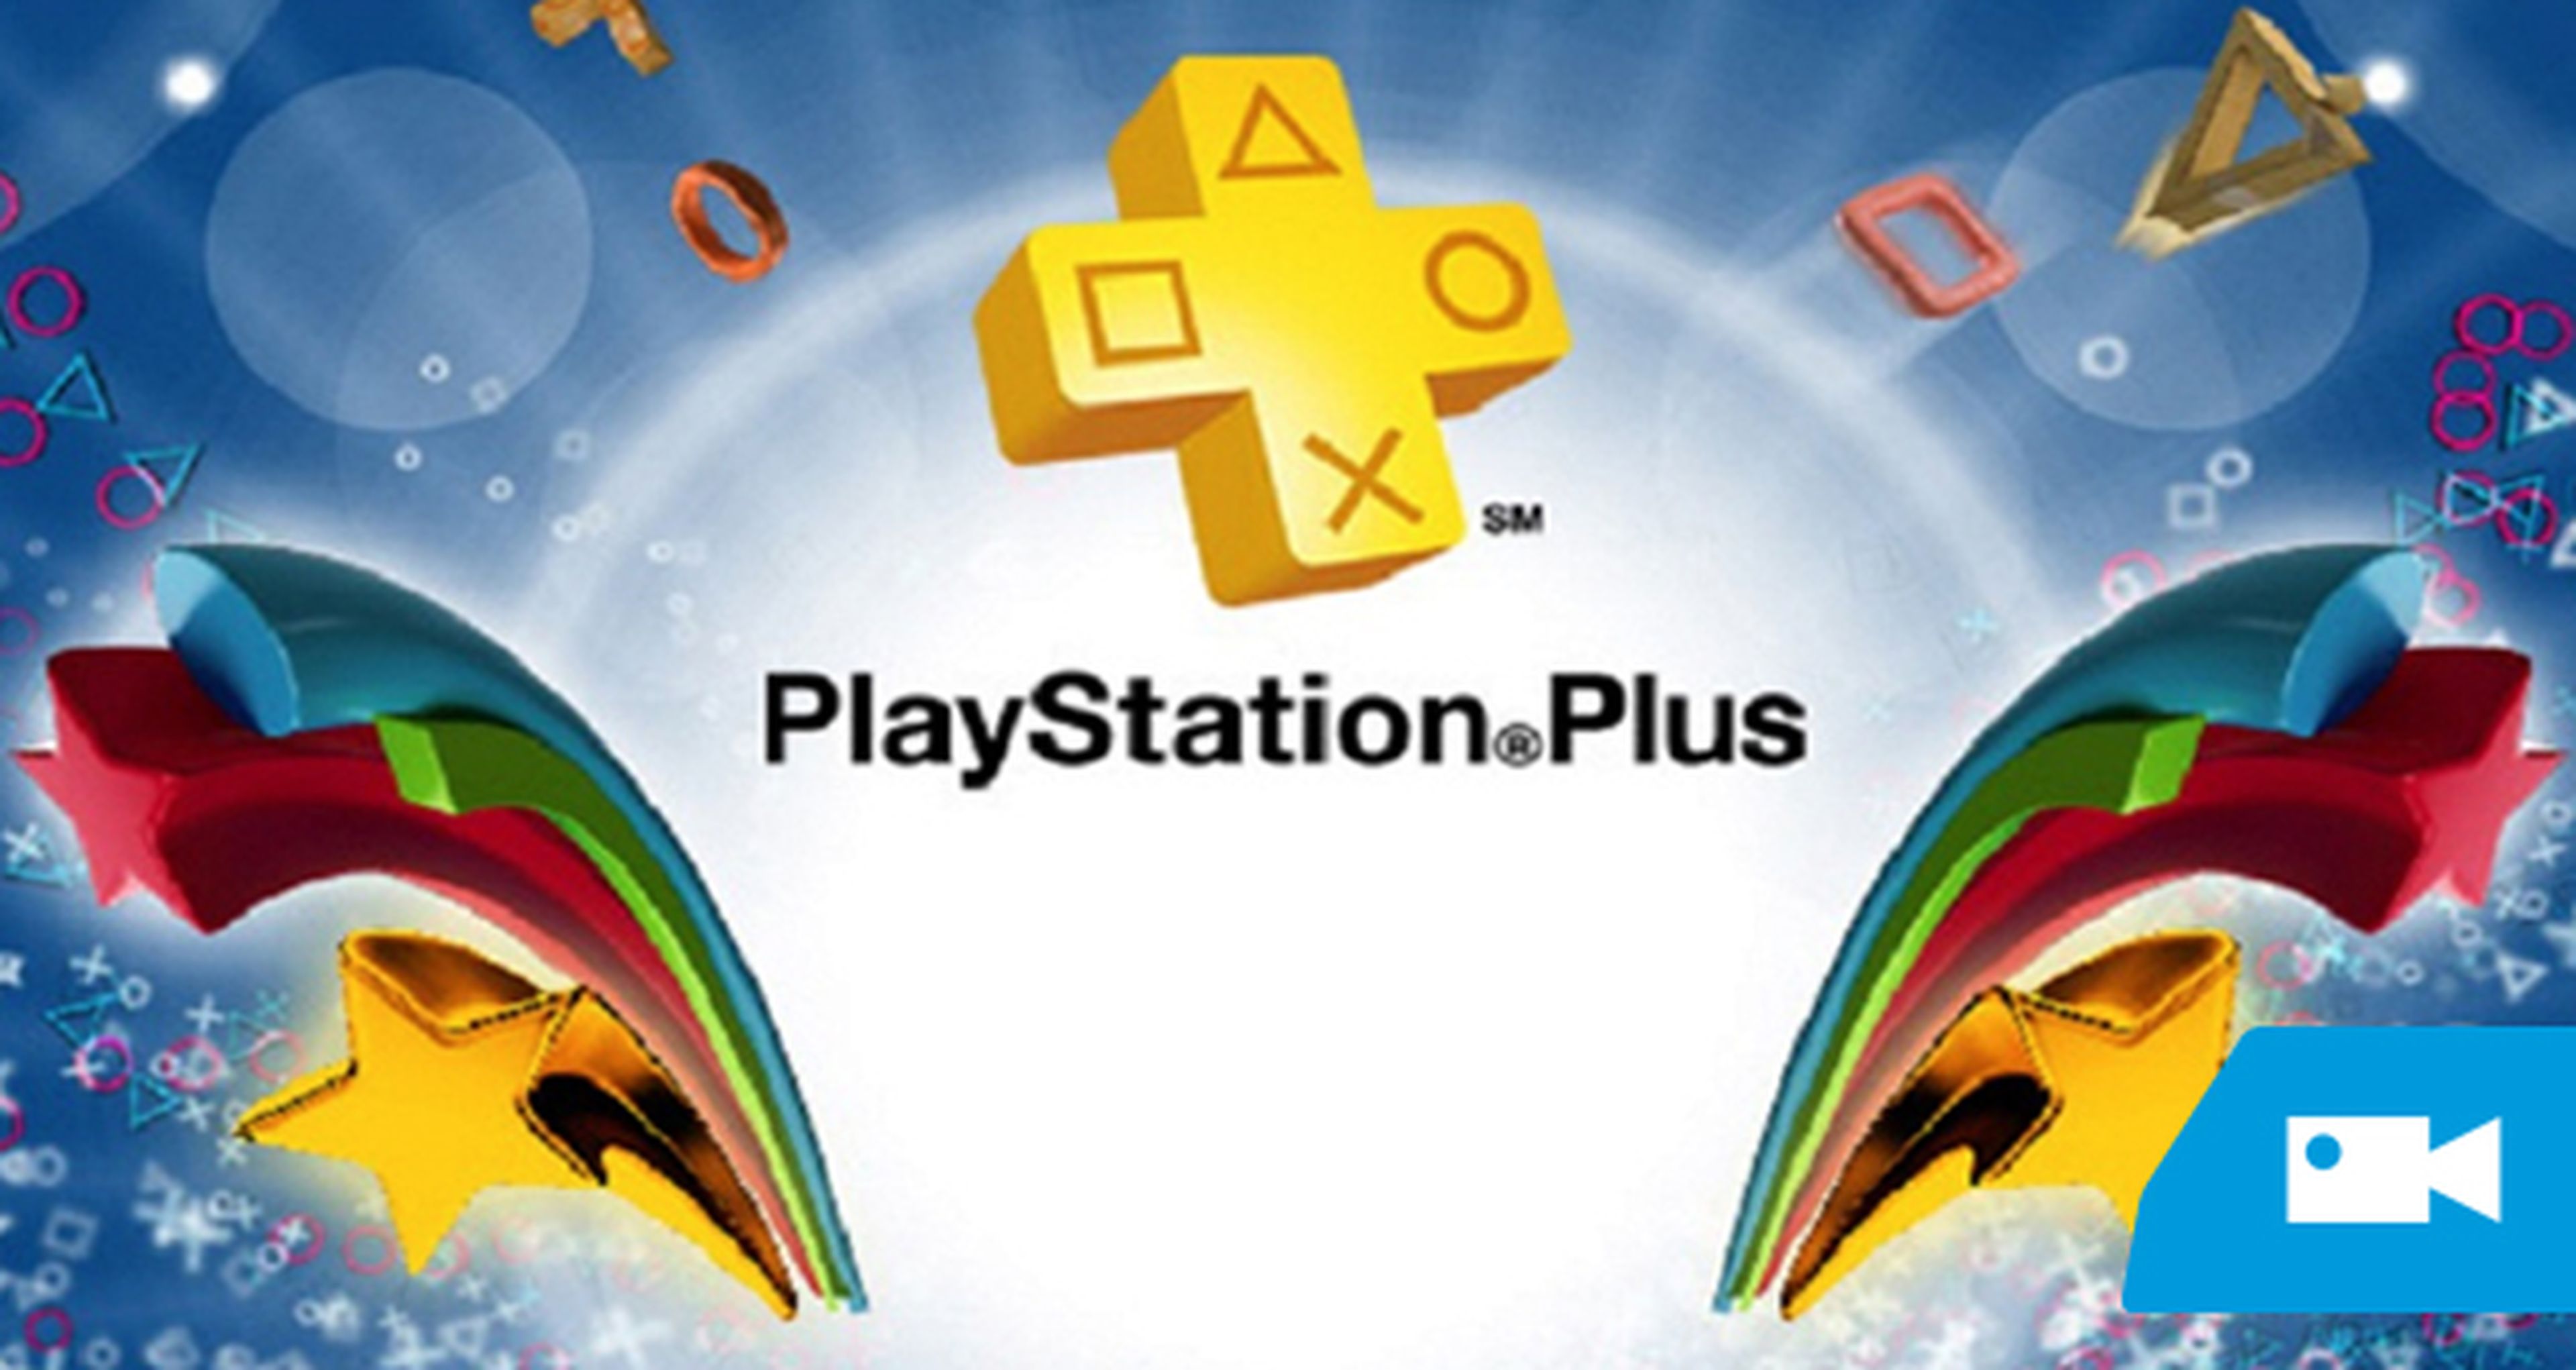 PS4 recibirá dos títulos en PSN+. Se confirman los juegos de junio